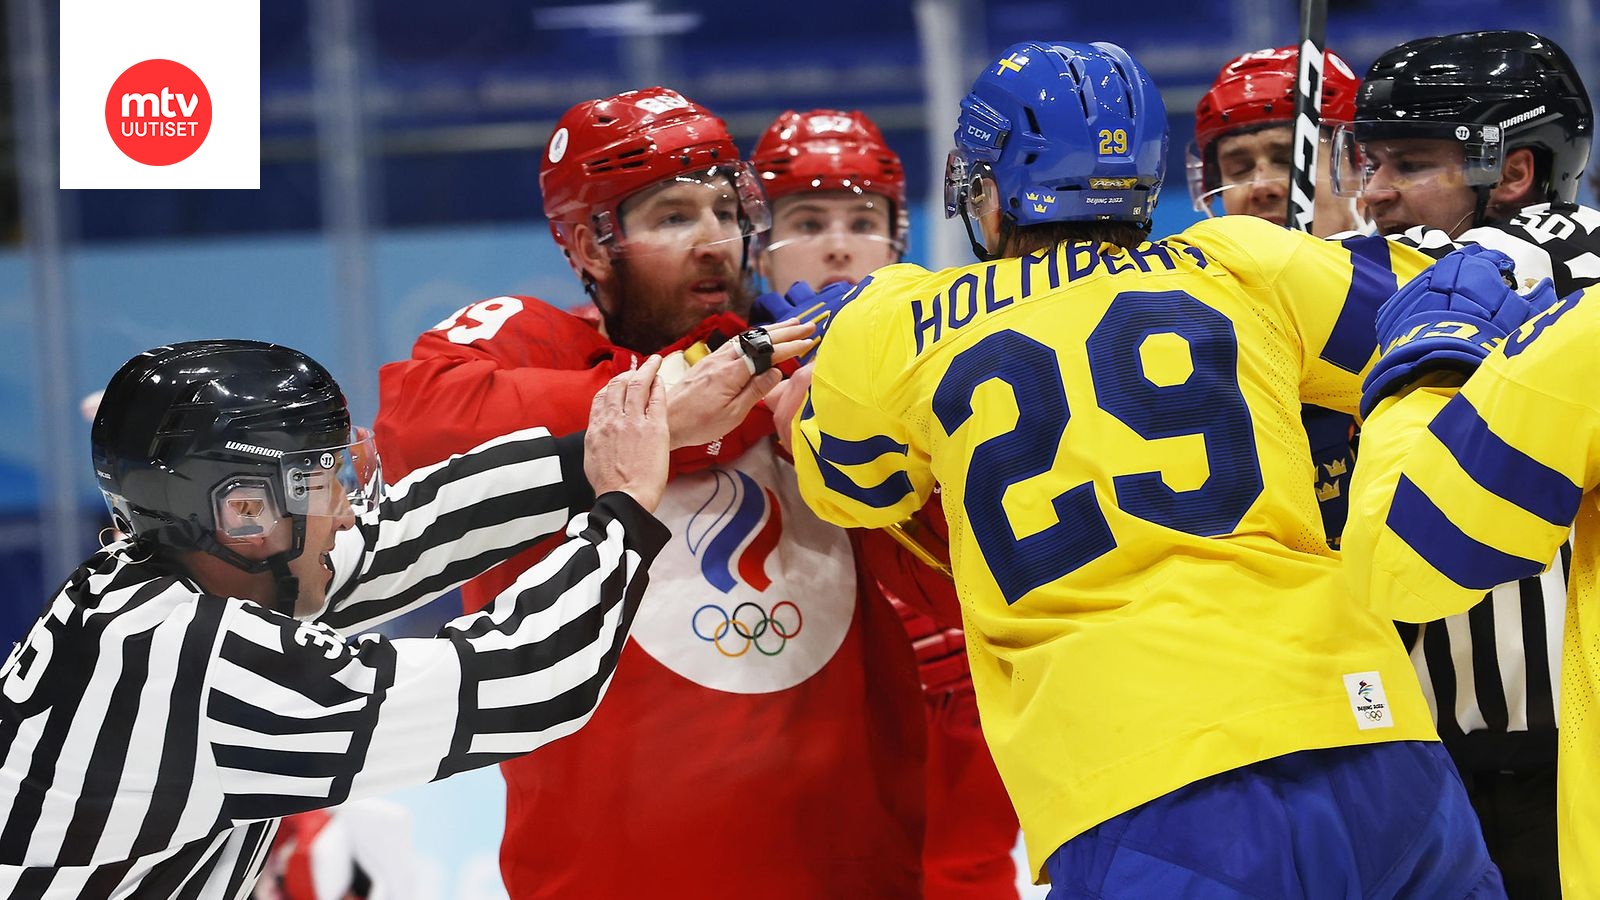 Suomi ja Venäjä kohtaavat jääkiekon olympiafinaalissa 